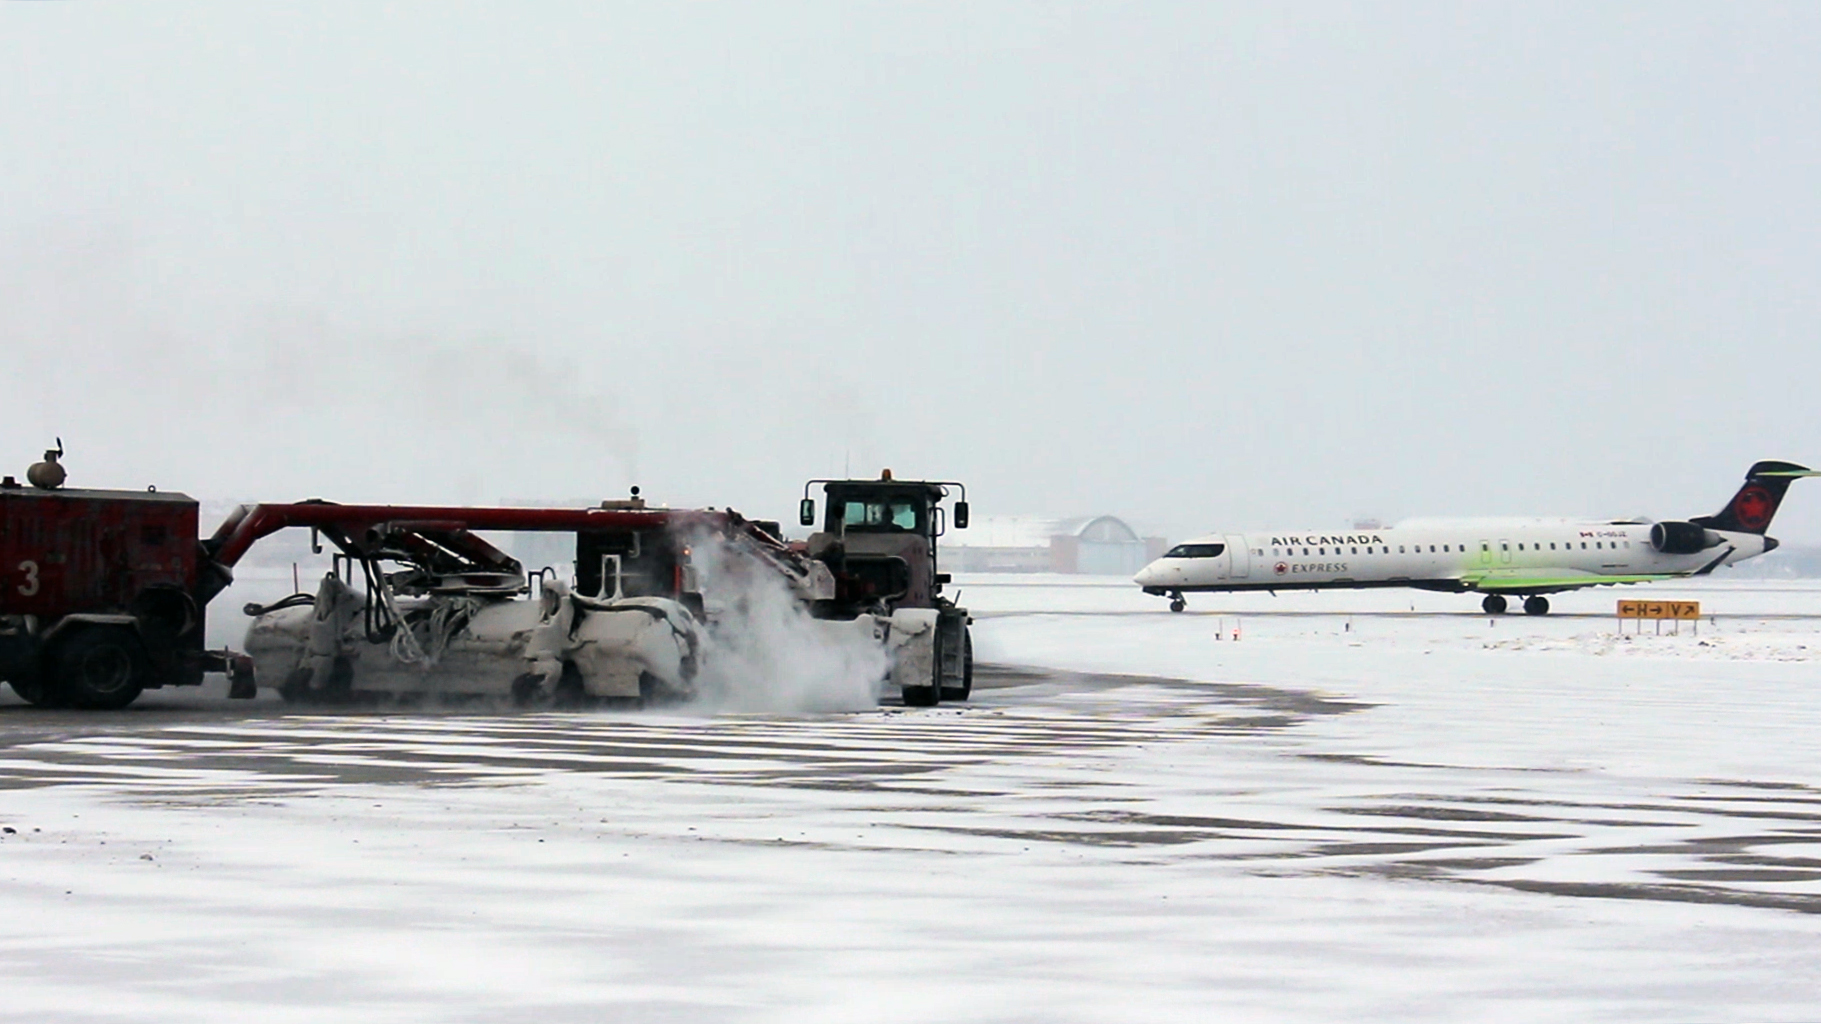 Un chasse-neige déblaie la neige sur le terrain d'aviation alors qu'un avion d'Air Canada roule en arrière-plan.